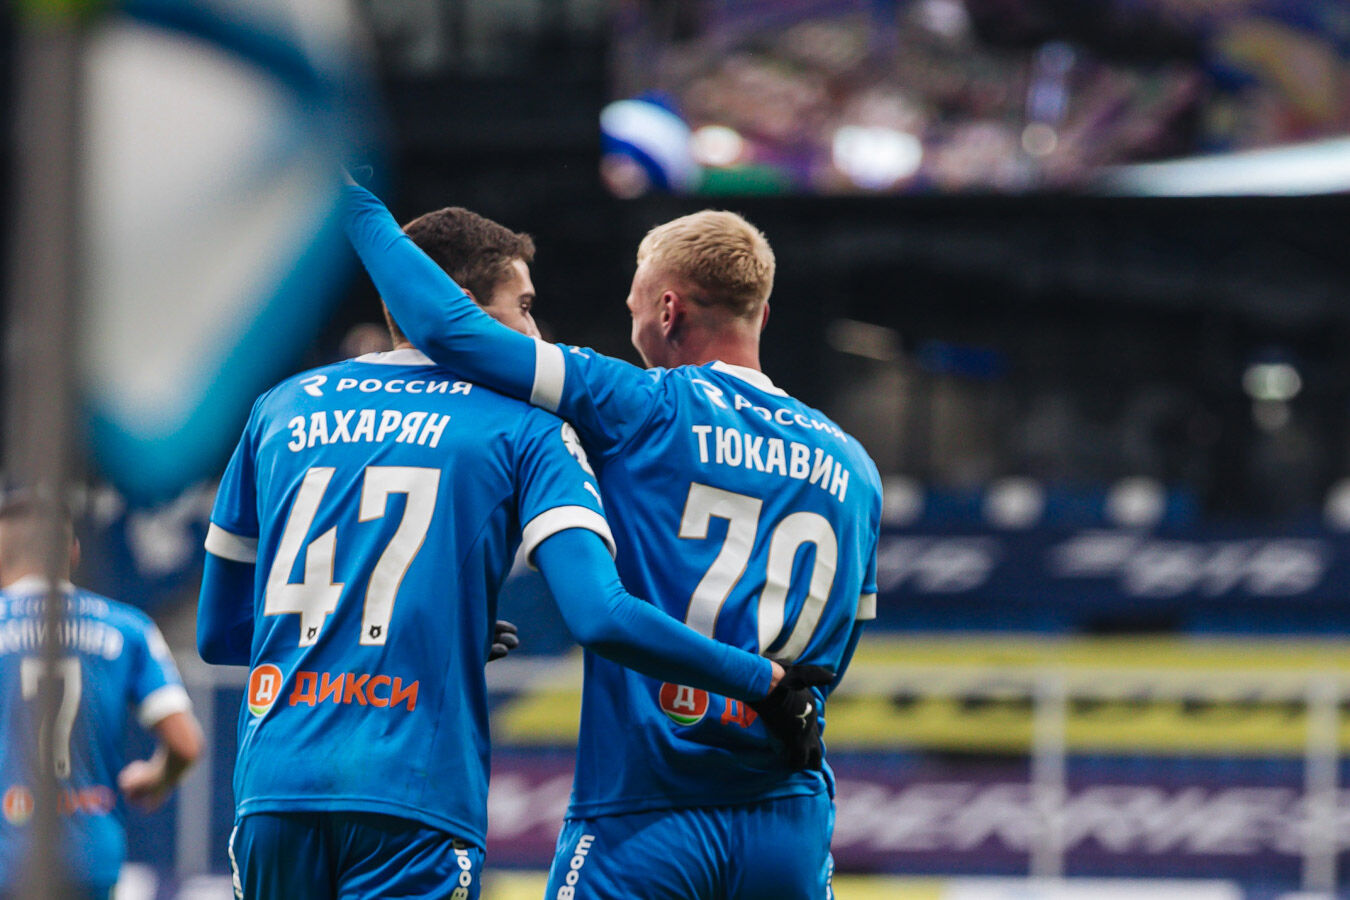 Photo gallery from RPL game Dynamo vs Krylya Sovetov